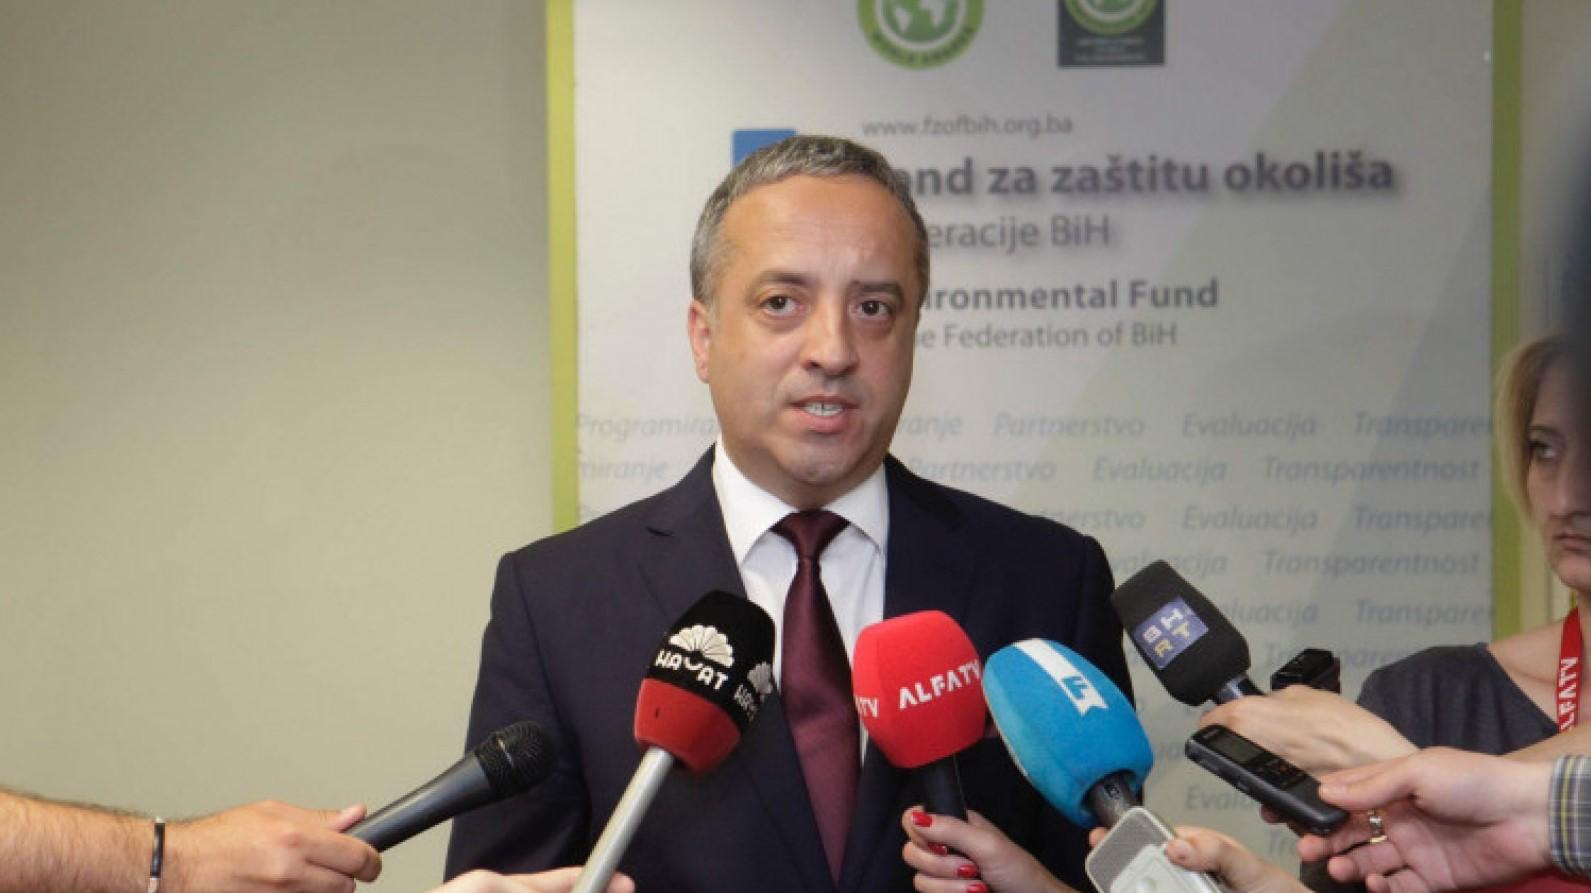 Čibukčić: Fond je prvi u regionu pokrenuo informacioni sistem - Avaz